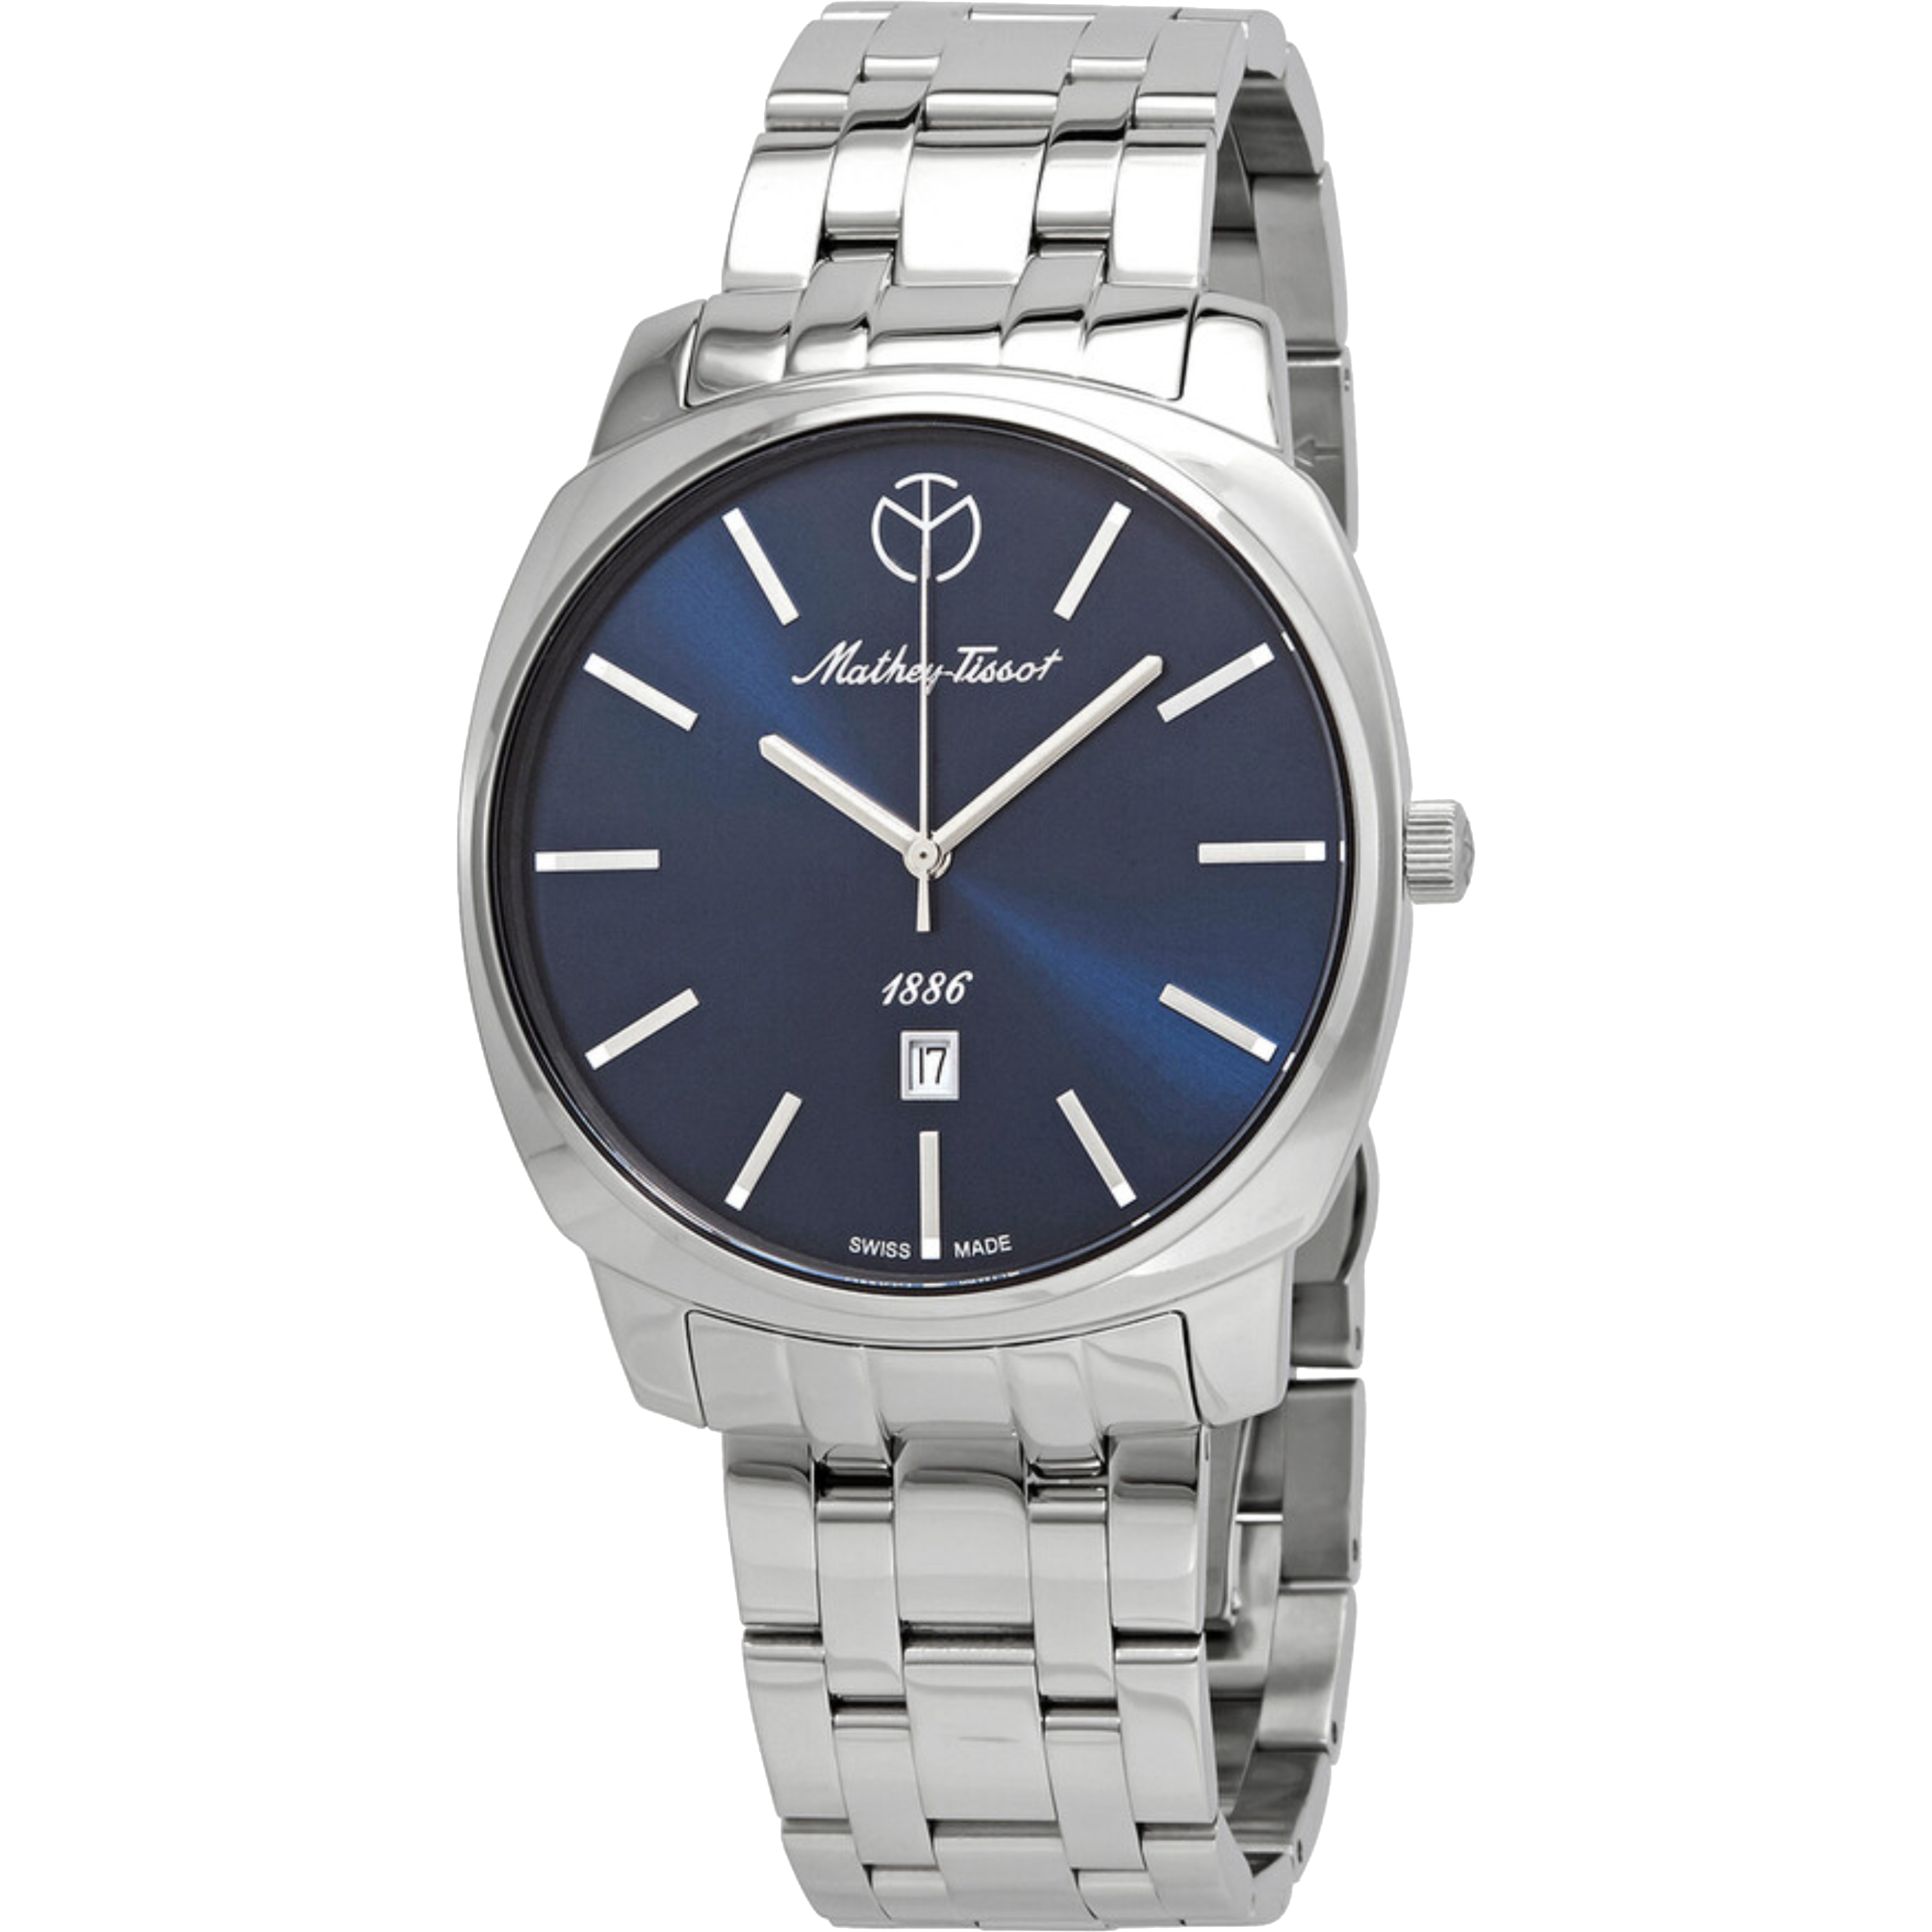 שעון יד לגבר Mathey Tissot H6940MABU 42mm צבע כסף/כחול - אחריות לשנה ע"י היבואן